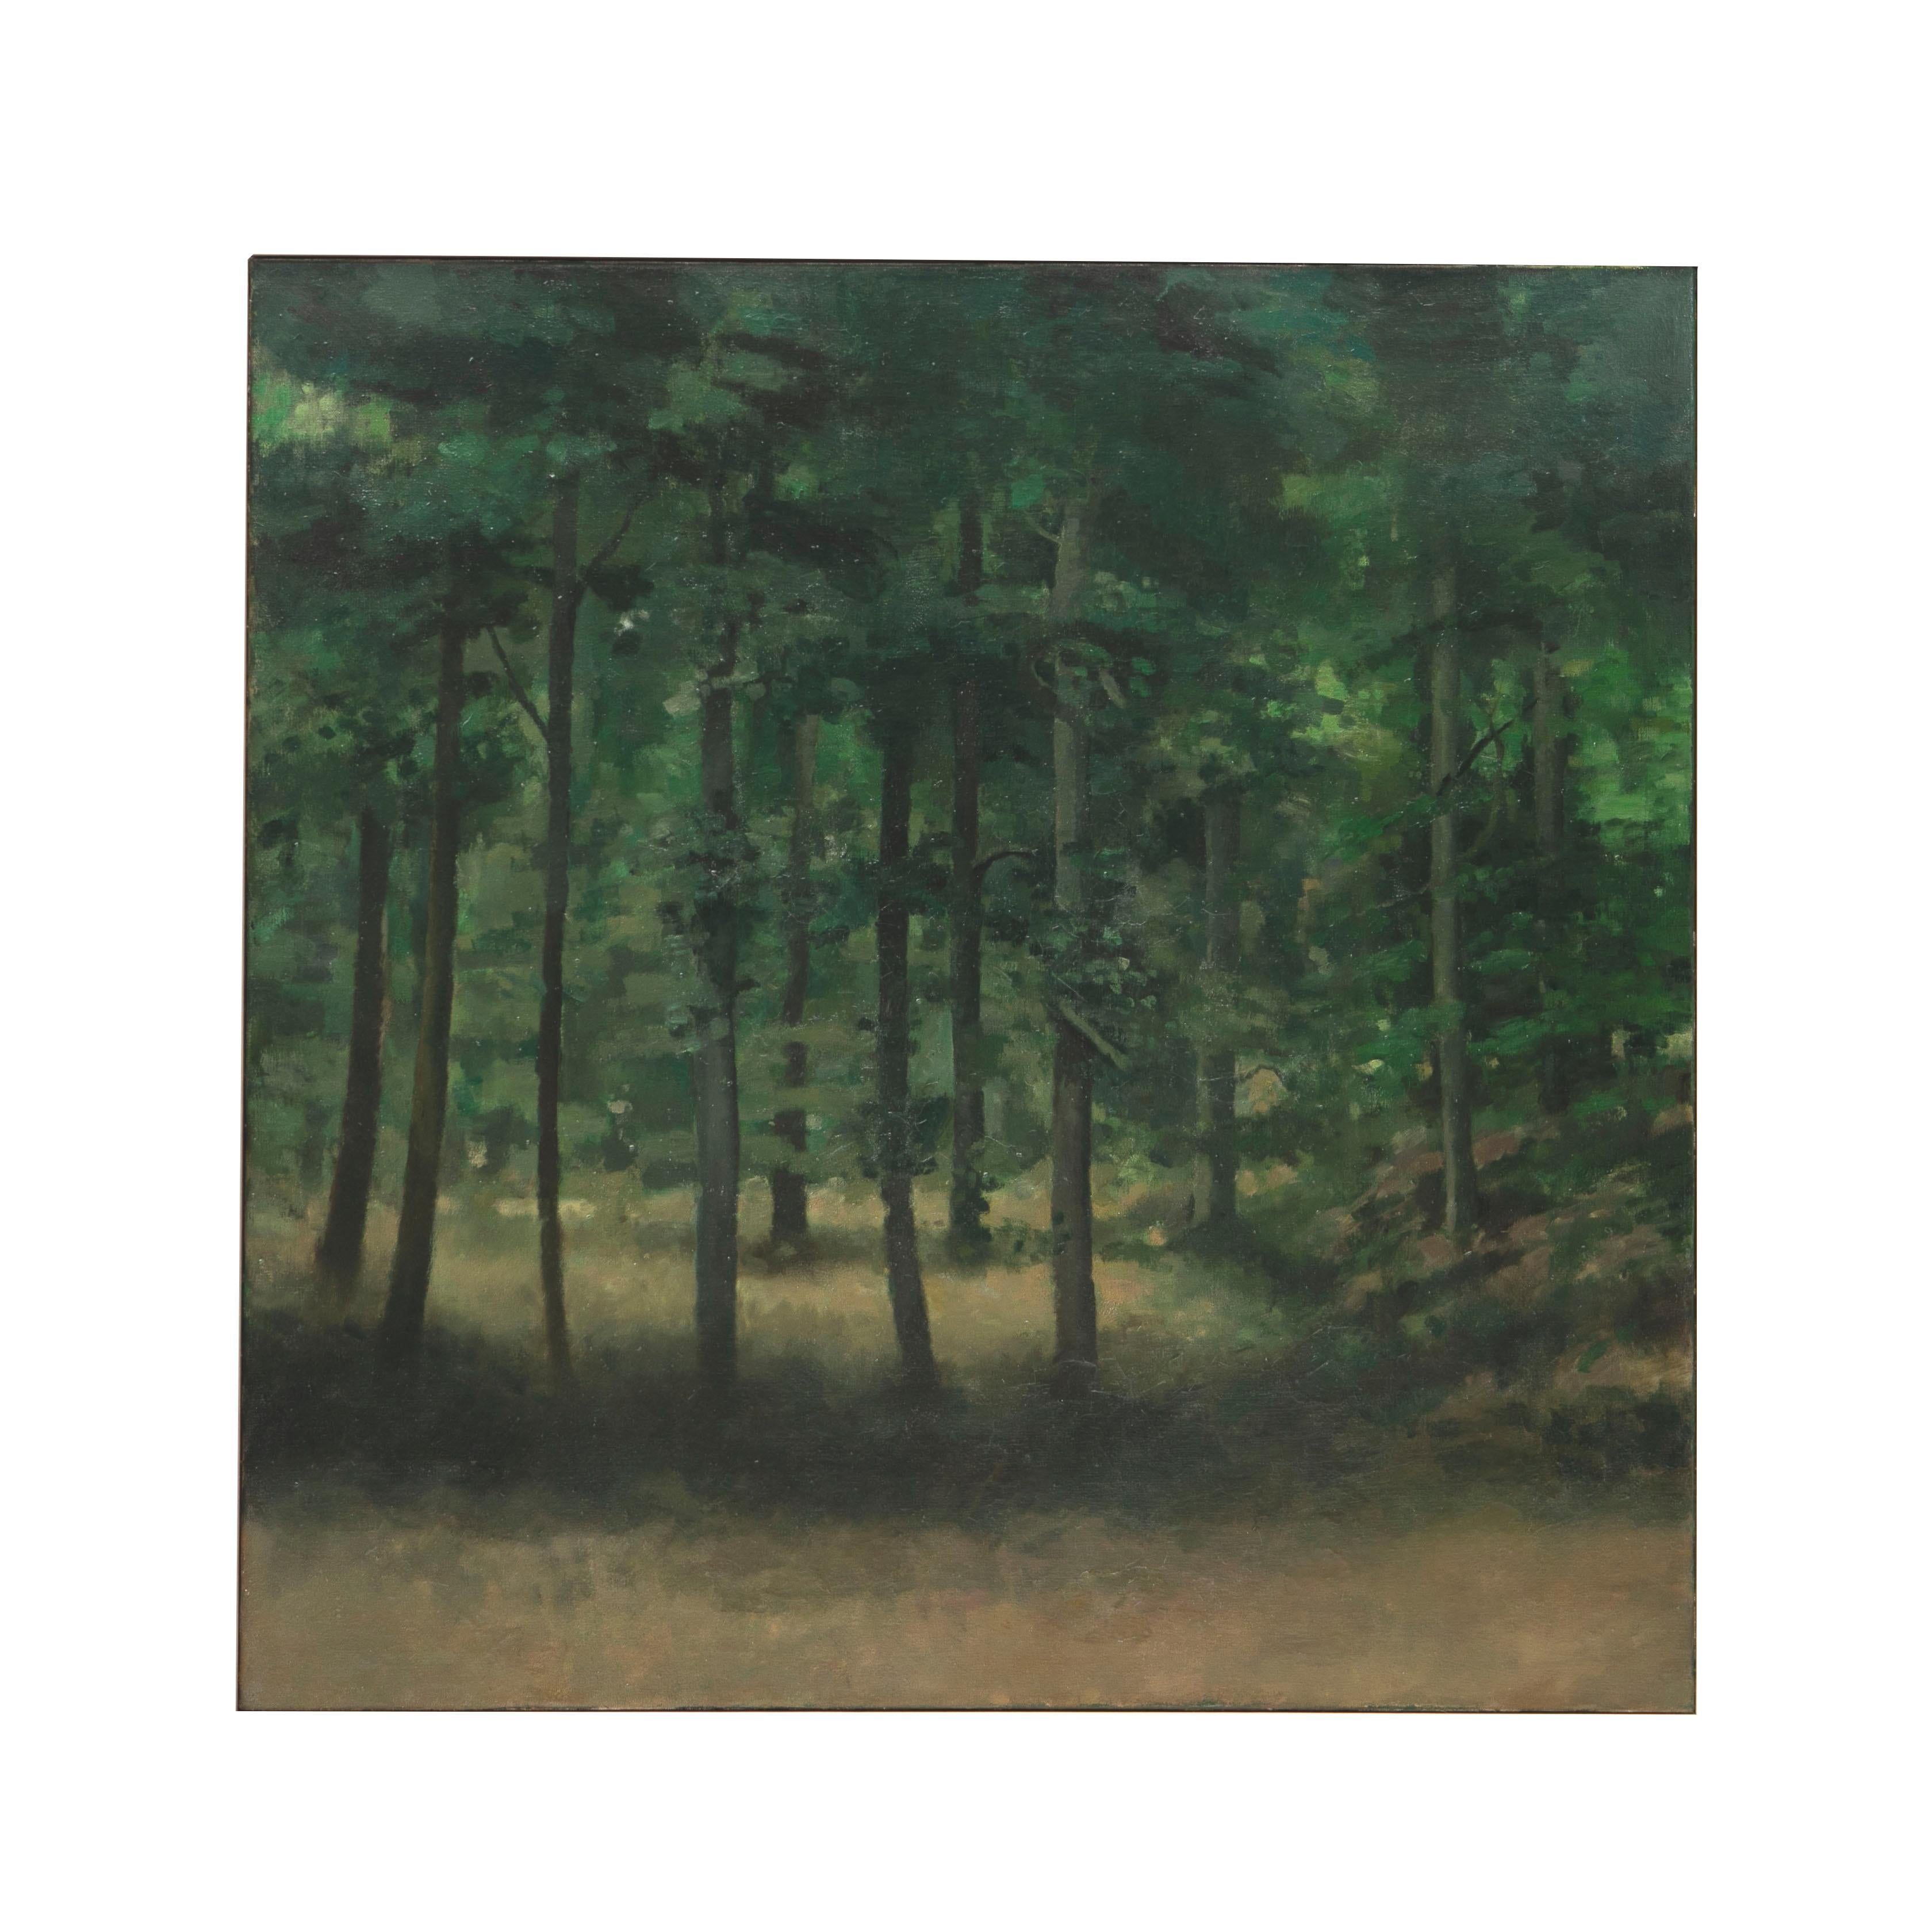 Preben Fjerderholt (danois 1955-2000).
Peinture de paysage à l'huile sur toile de Preben Fjederholt. Représentation d'une clairière de forêt de hêtres, avec la lumière du soleil qui traverse les arbres.

Dimensions sans cadre : 100 x 100 cm.
Encadré